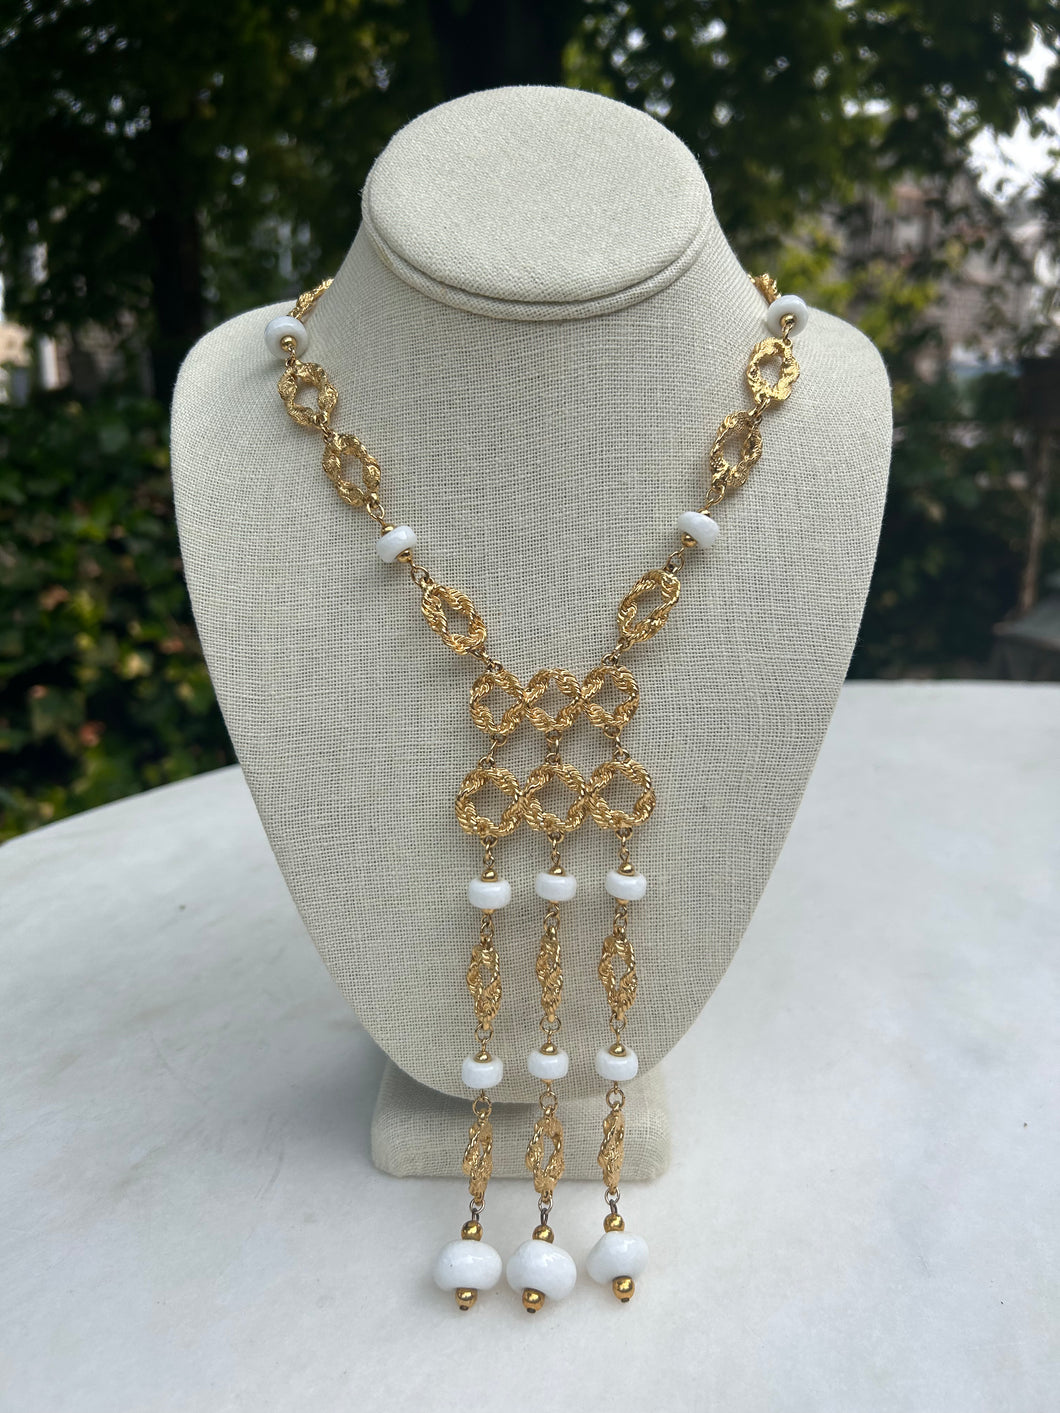 Vintage Gold Tassled Necklace